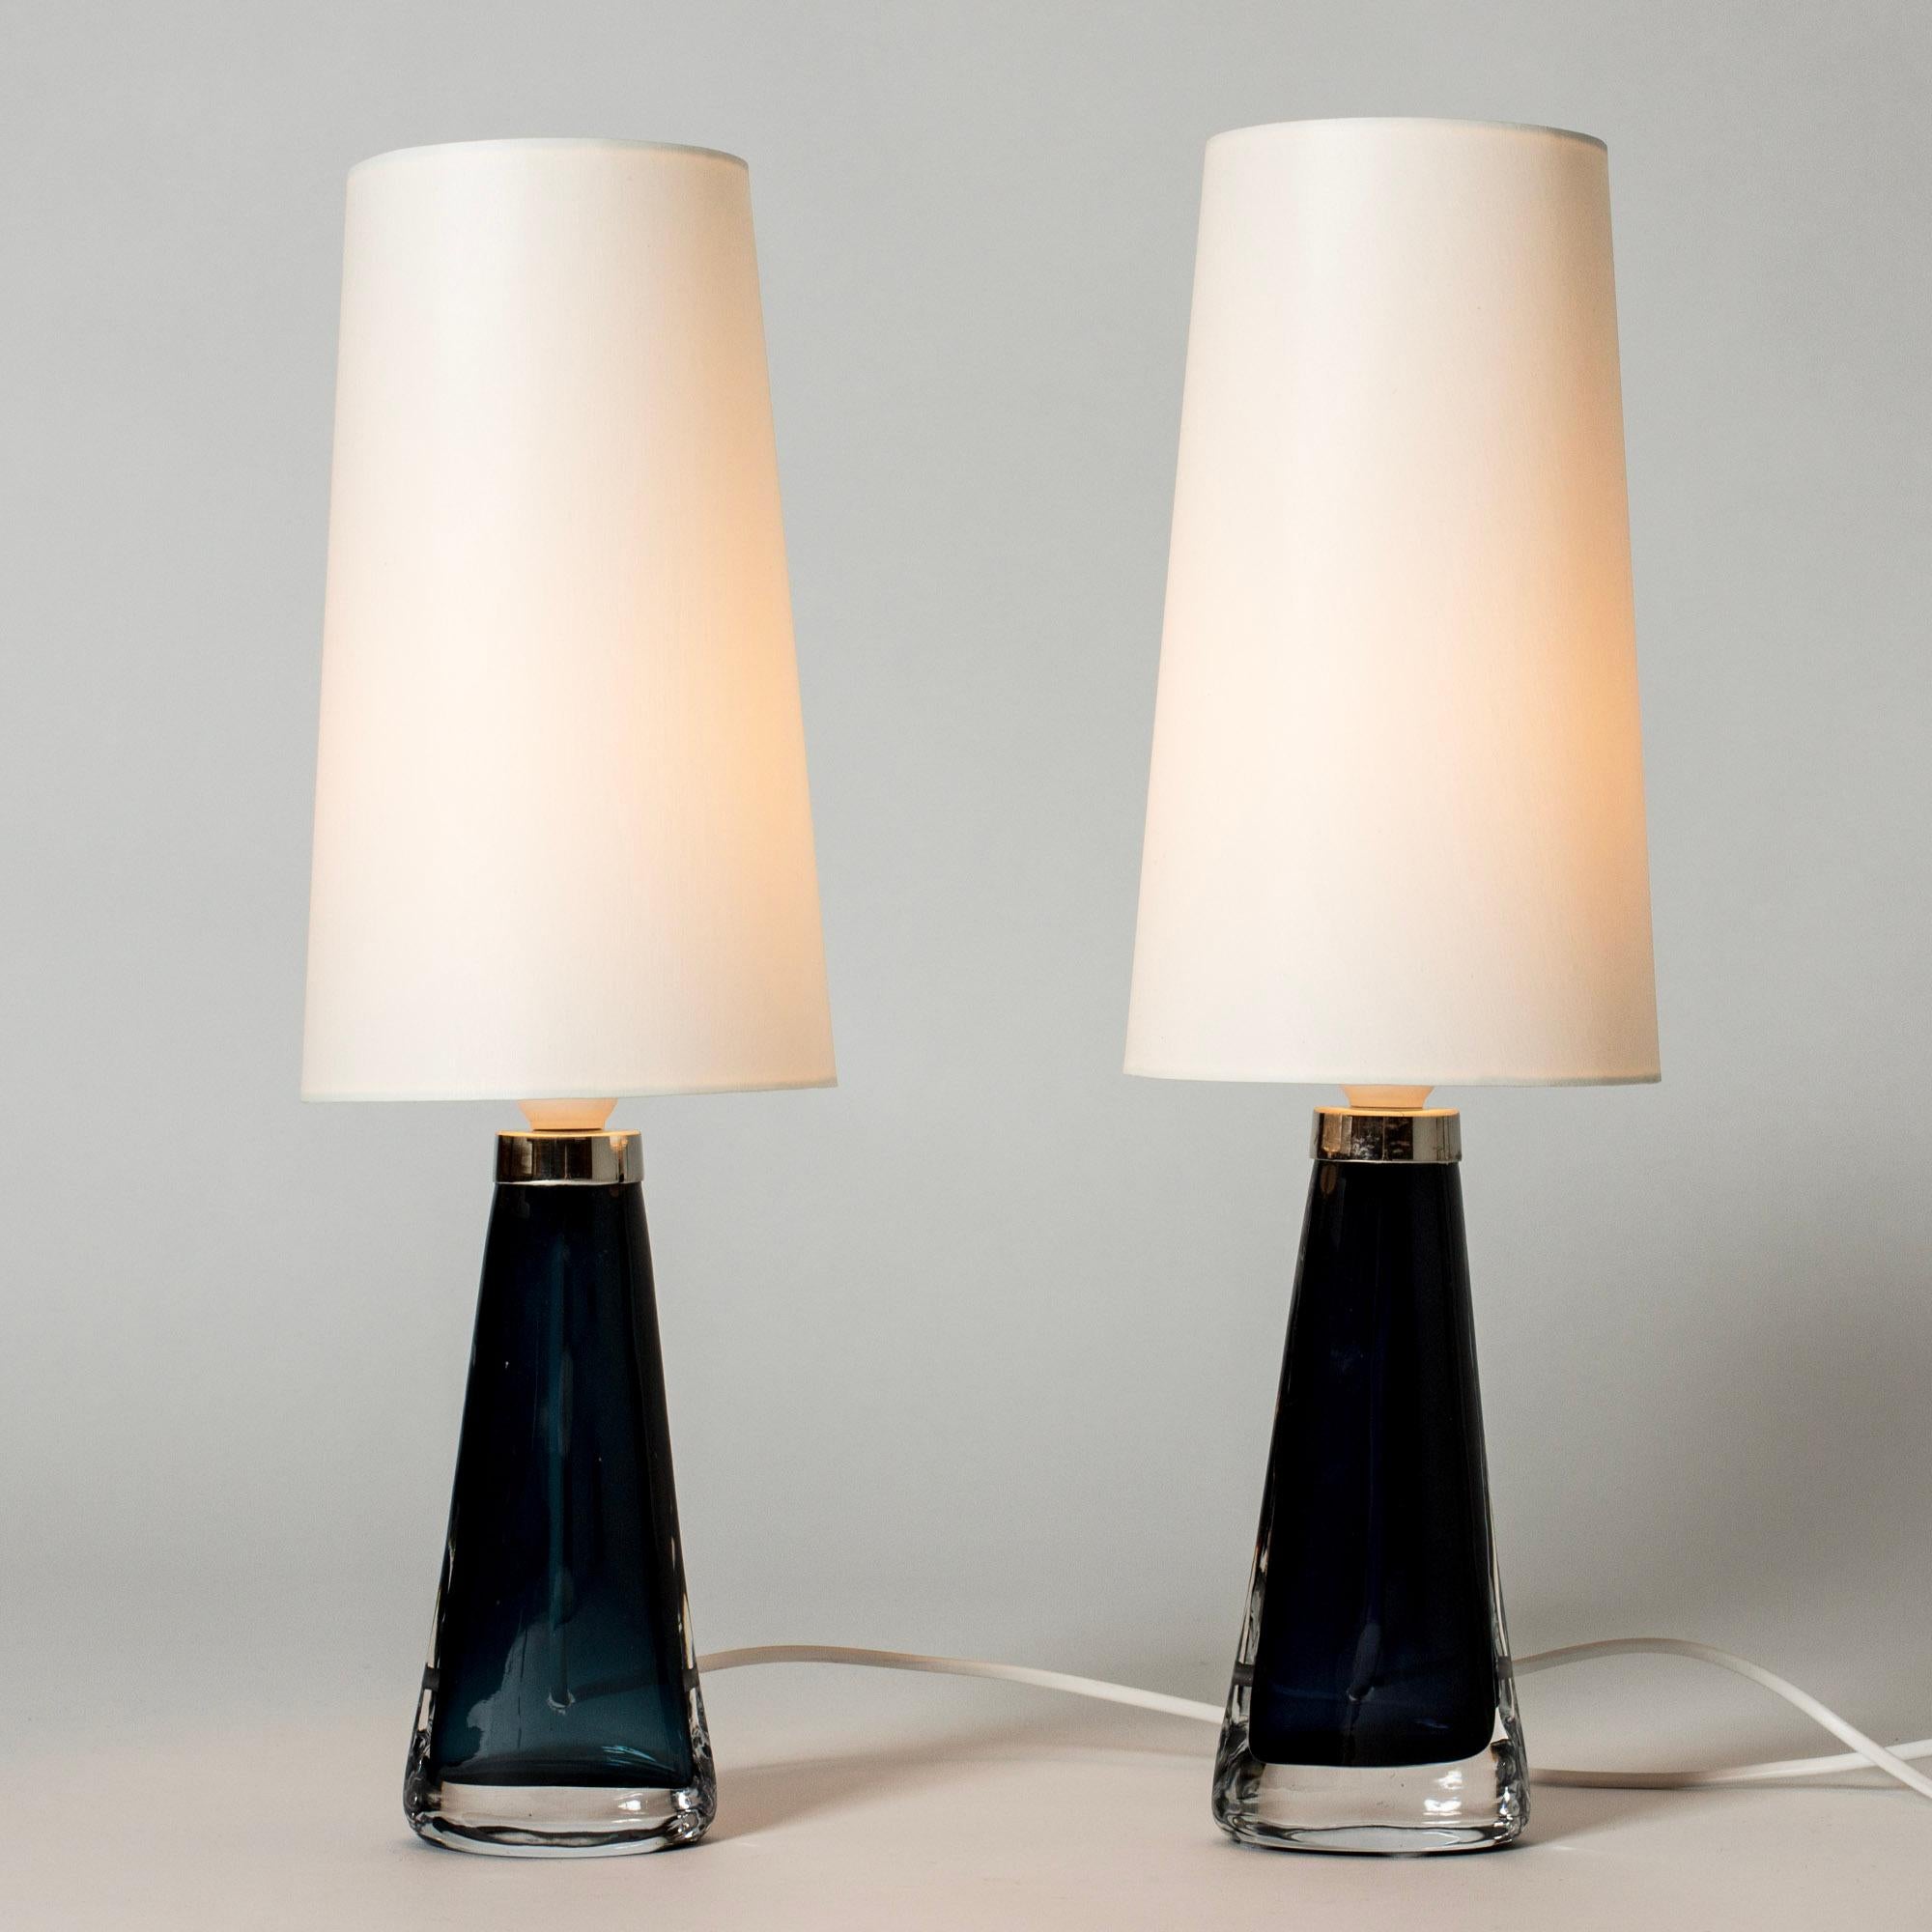 Ein Paar Kristallglas-Tischlampen von Carl Fagerlund in einer ordentlichen Größe. Aus dunkelblauem Glas in schmaler, konischer Form, am Boden mandelförmig. Schöne durchscheinende Farbe, elegantes Design.